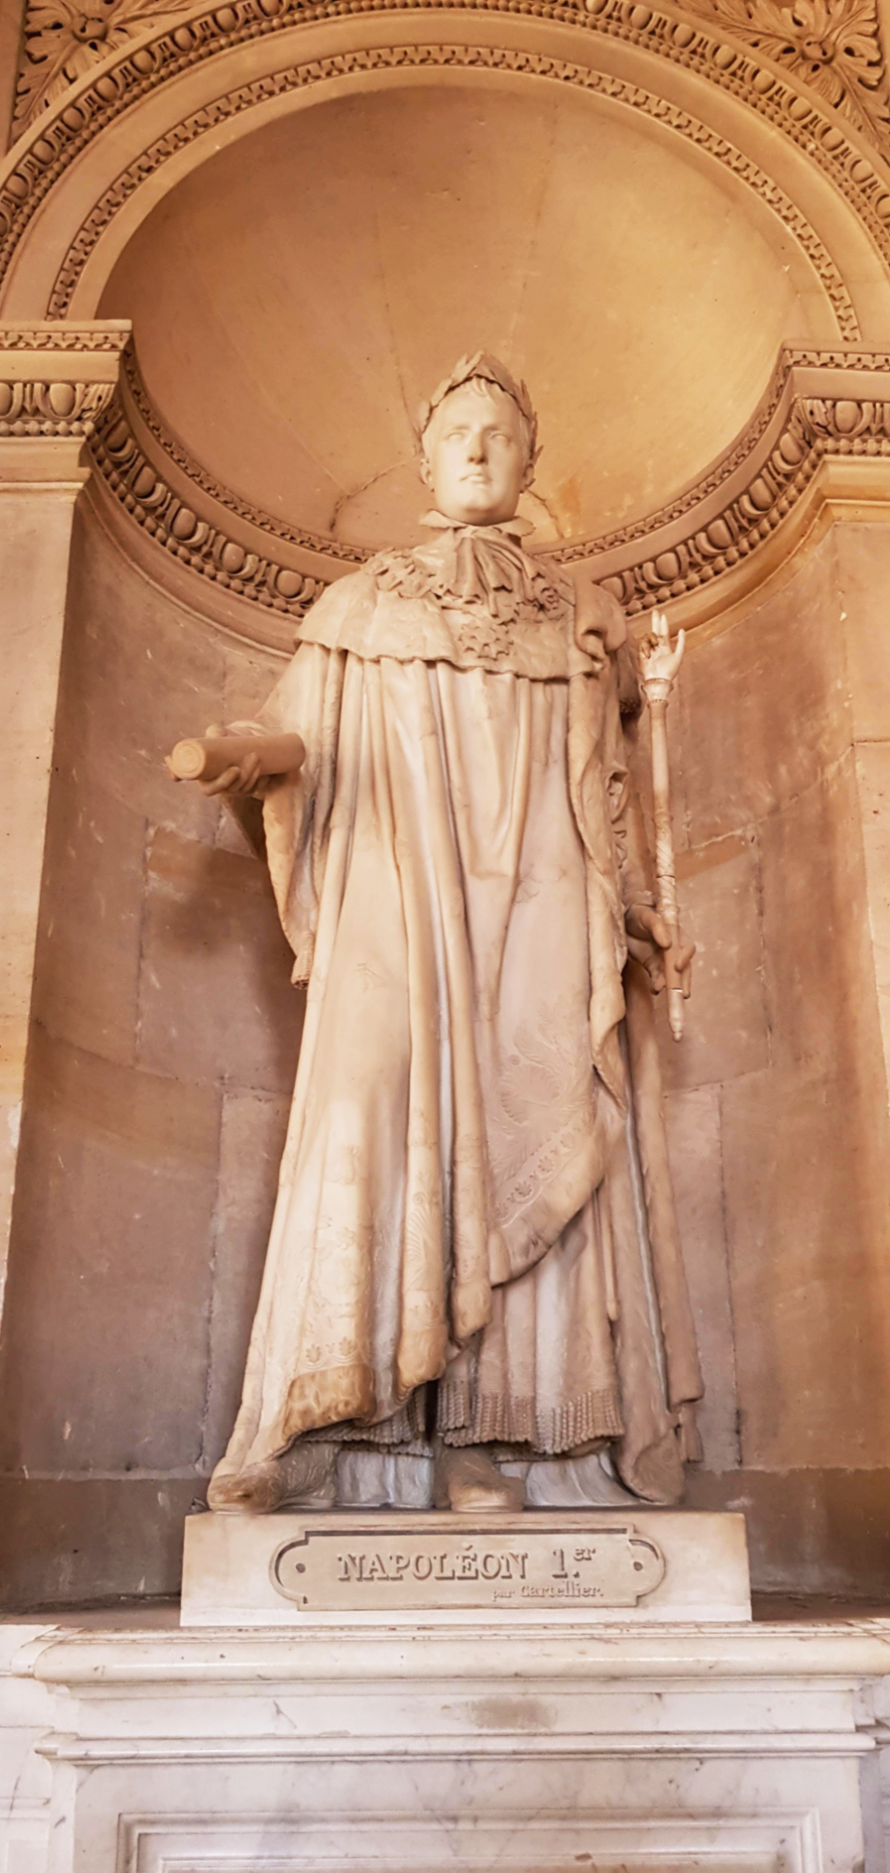 베르사유 궁전 나폴레옹 1세 전신 석상